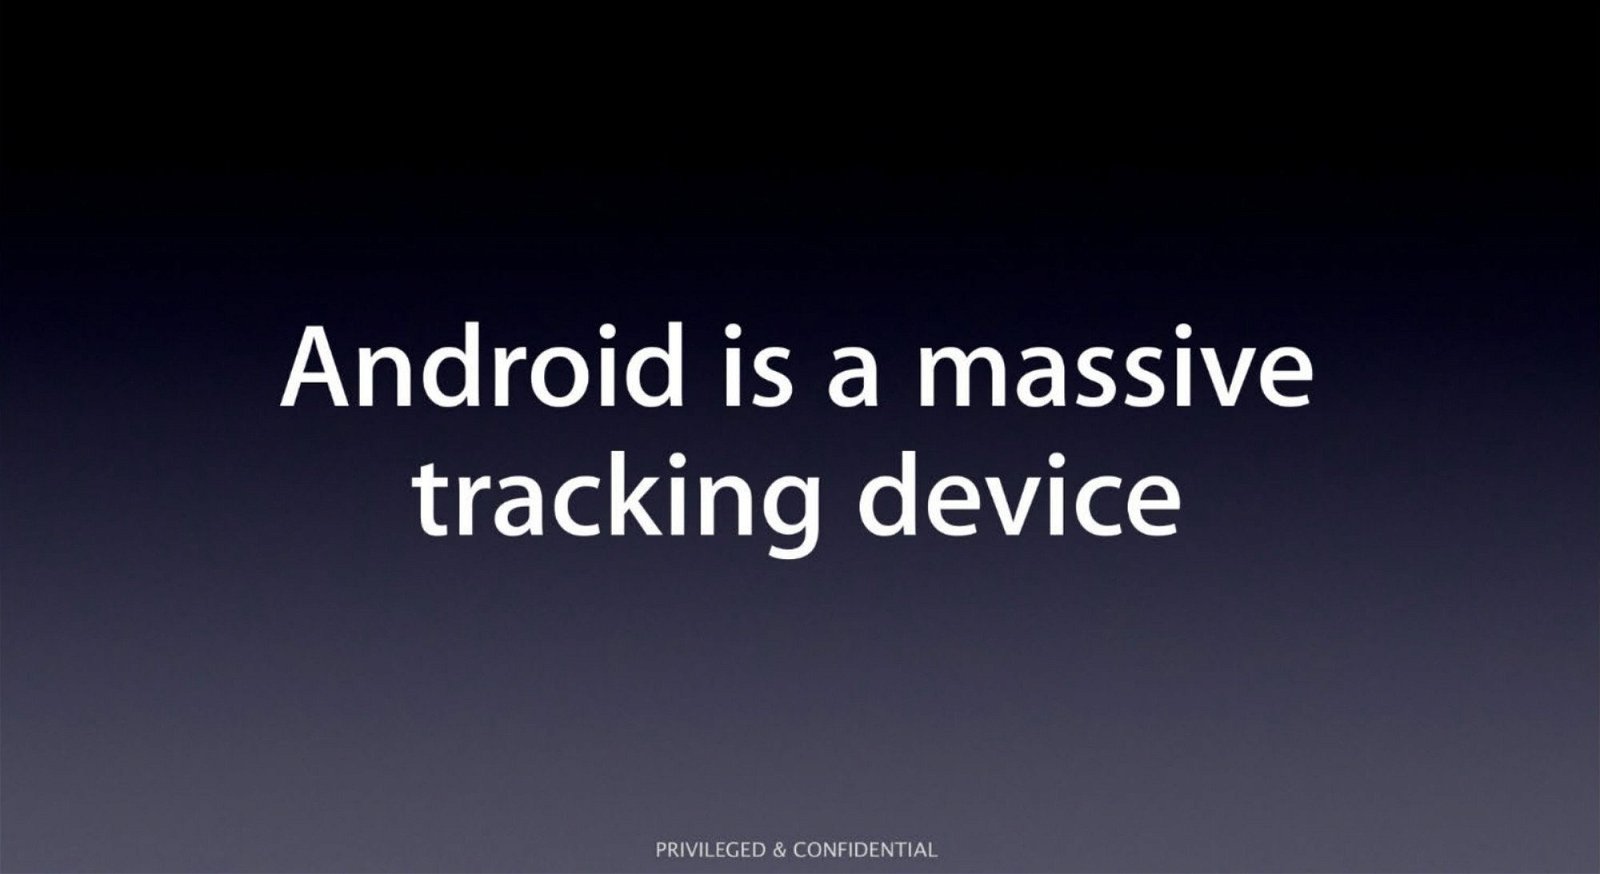 Immagine di Apple descrive Android come uno strumento di sorveglianza di massa